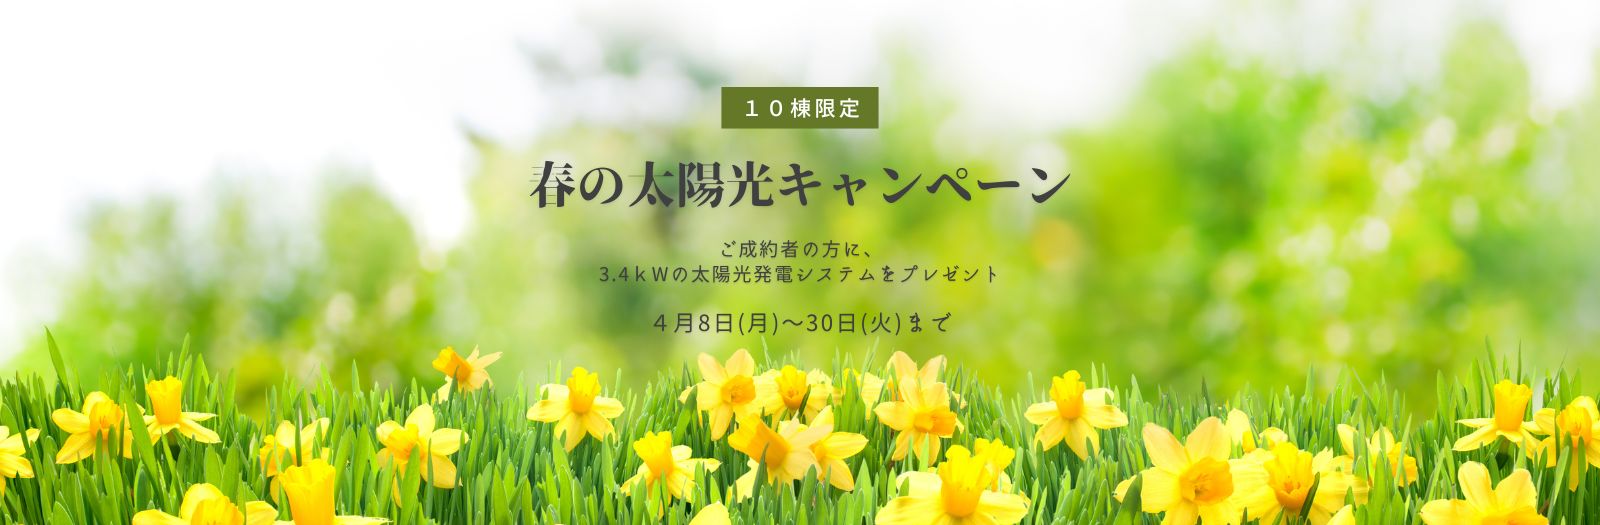 春の太陽光キャンペーン(1600 x 525 px)